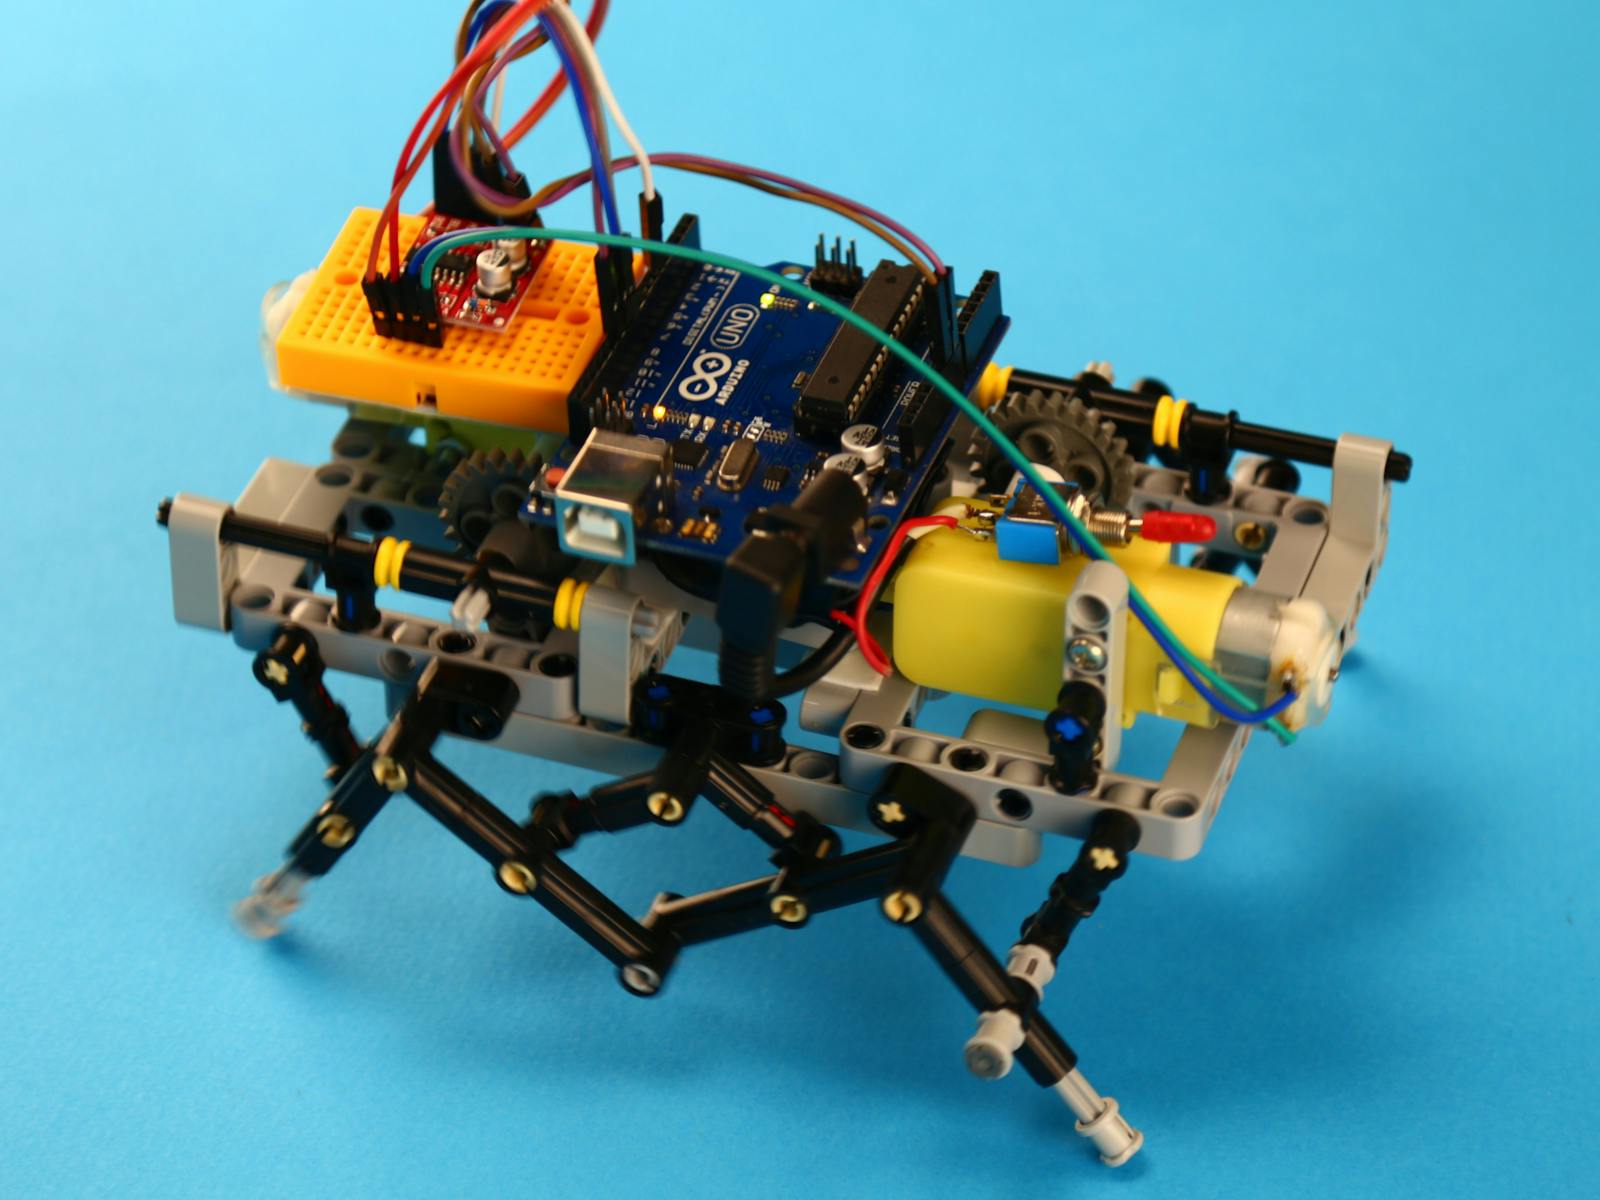 A very nimble DIY hexapod robot